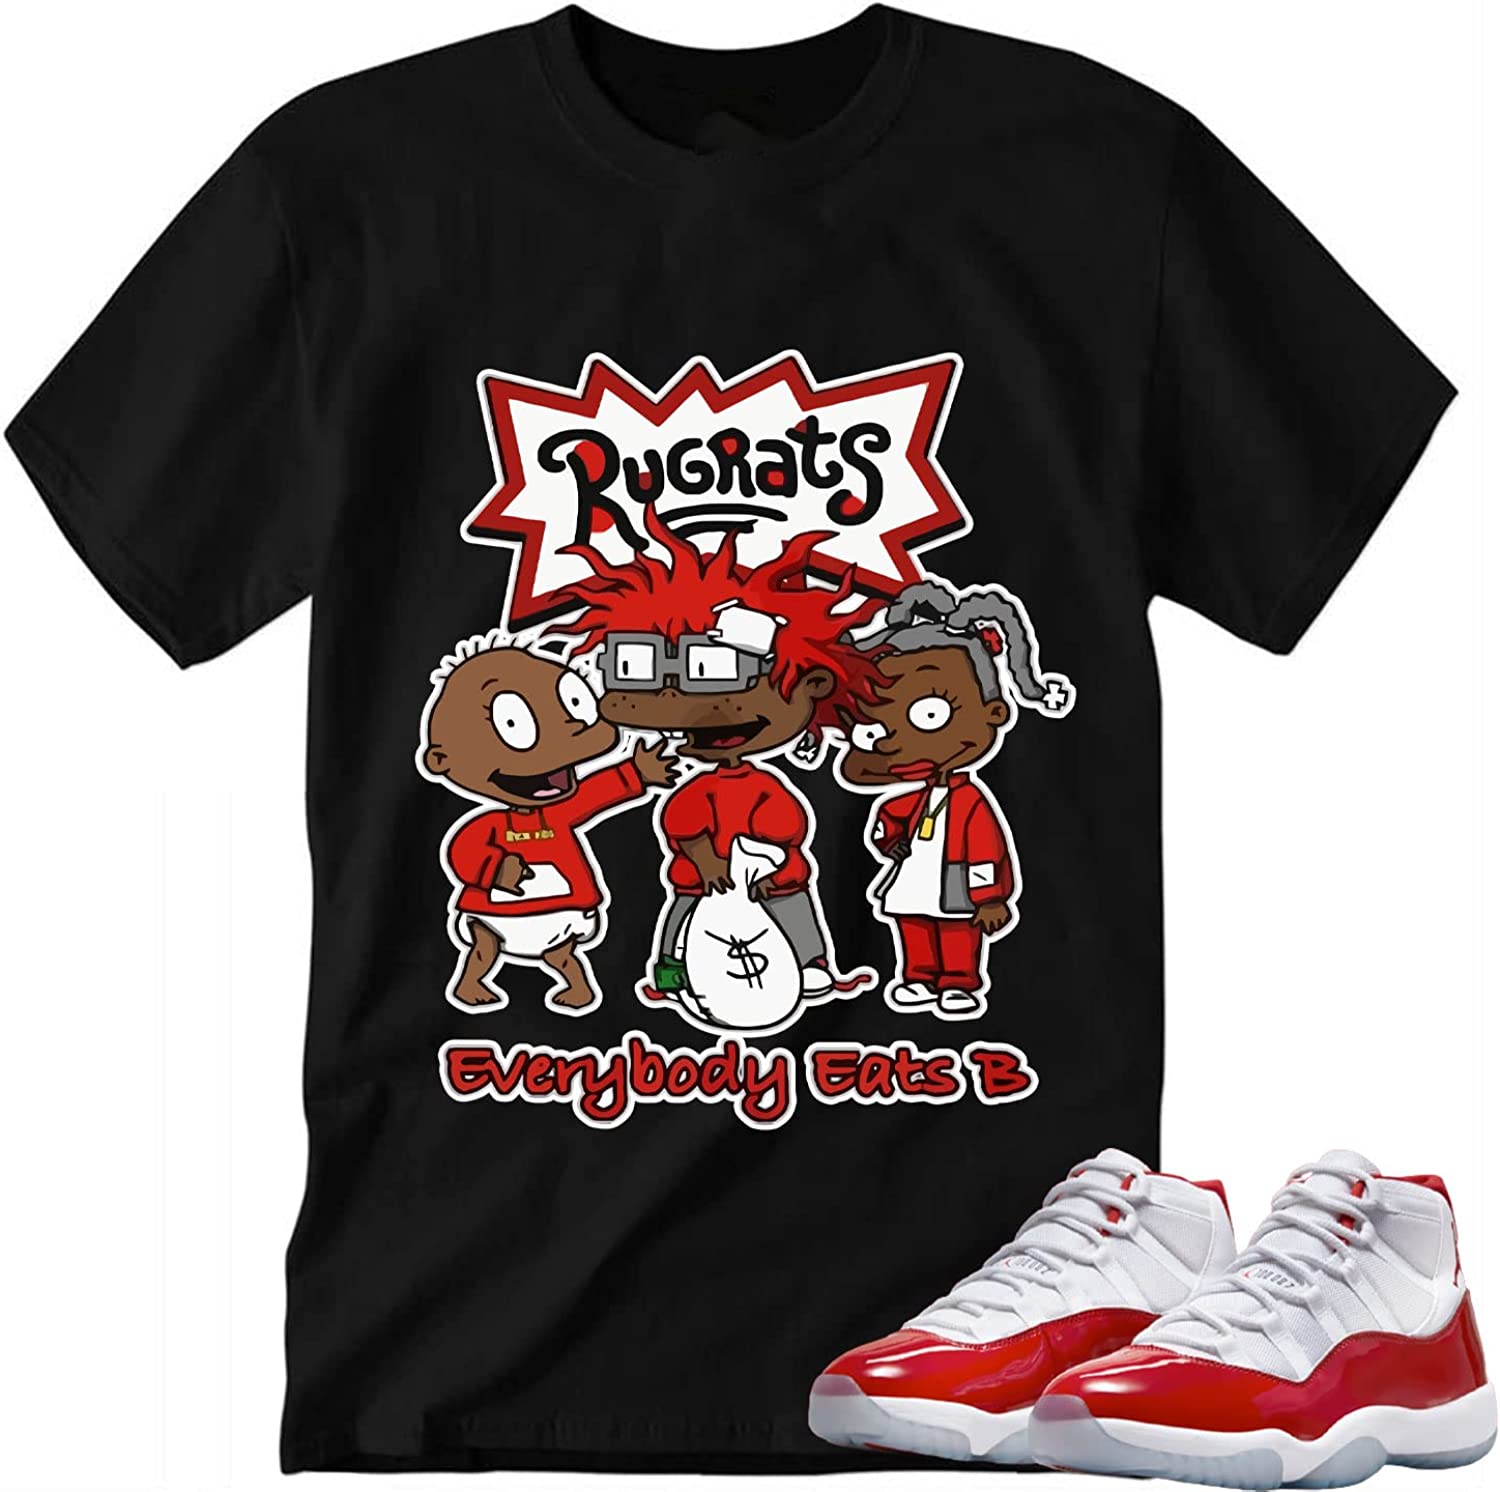 Everybody Eats B Shirt to Match J0rdan 11 Retro Cherry, Tee Matching for Sneaker J0rdan 11 Retro Cherry, Gift for Sneaker J0rdan 11 Retro Cherry, Retro 11s Cherry t Shirts to J0rdan – JOT046